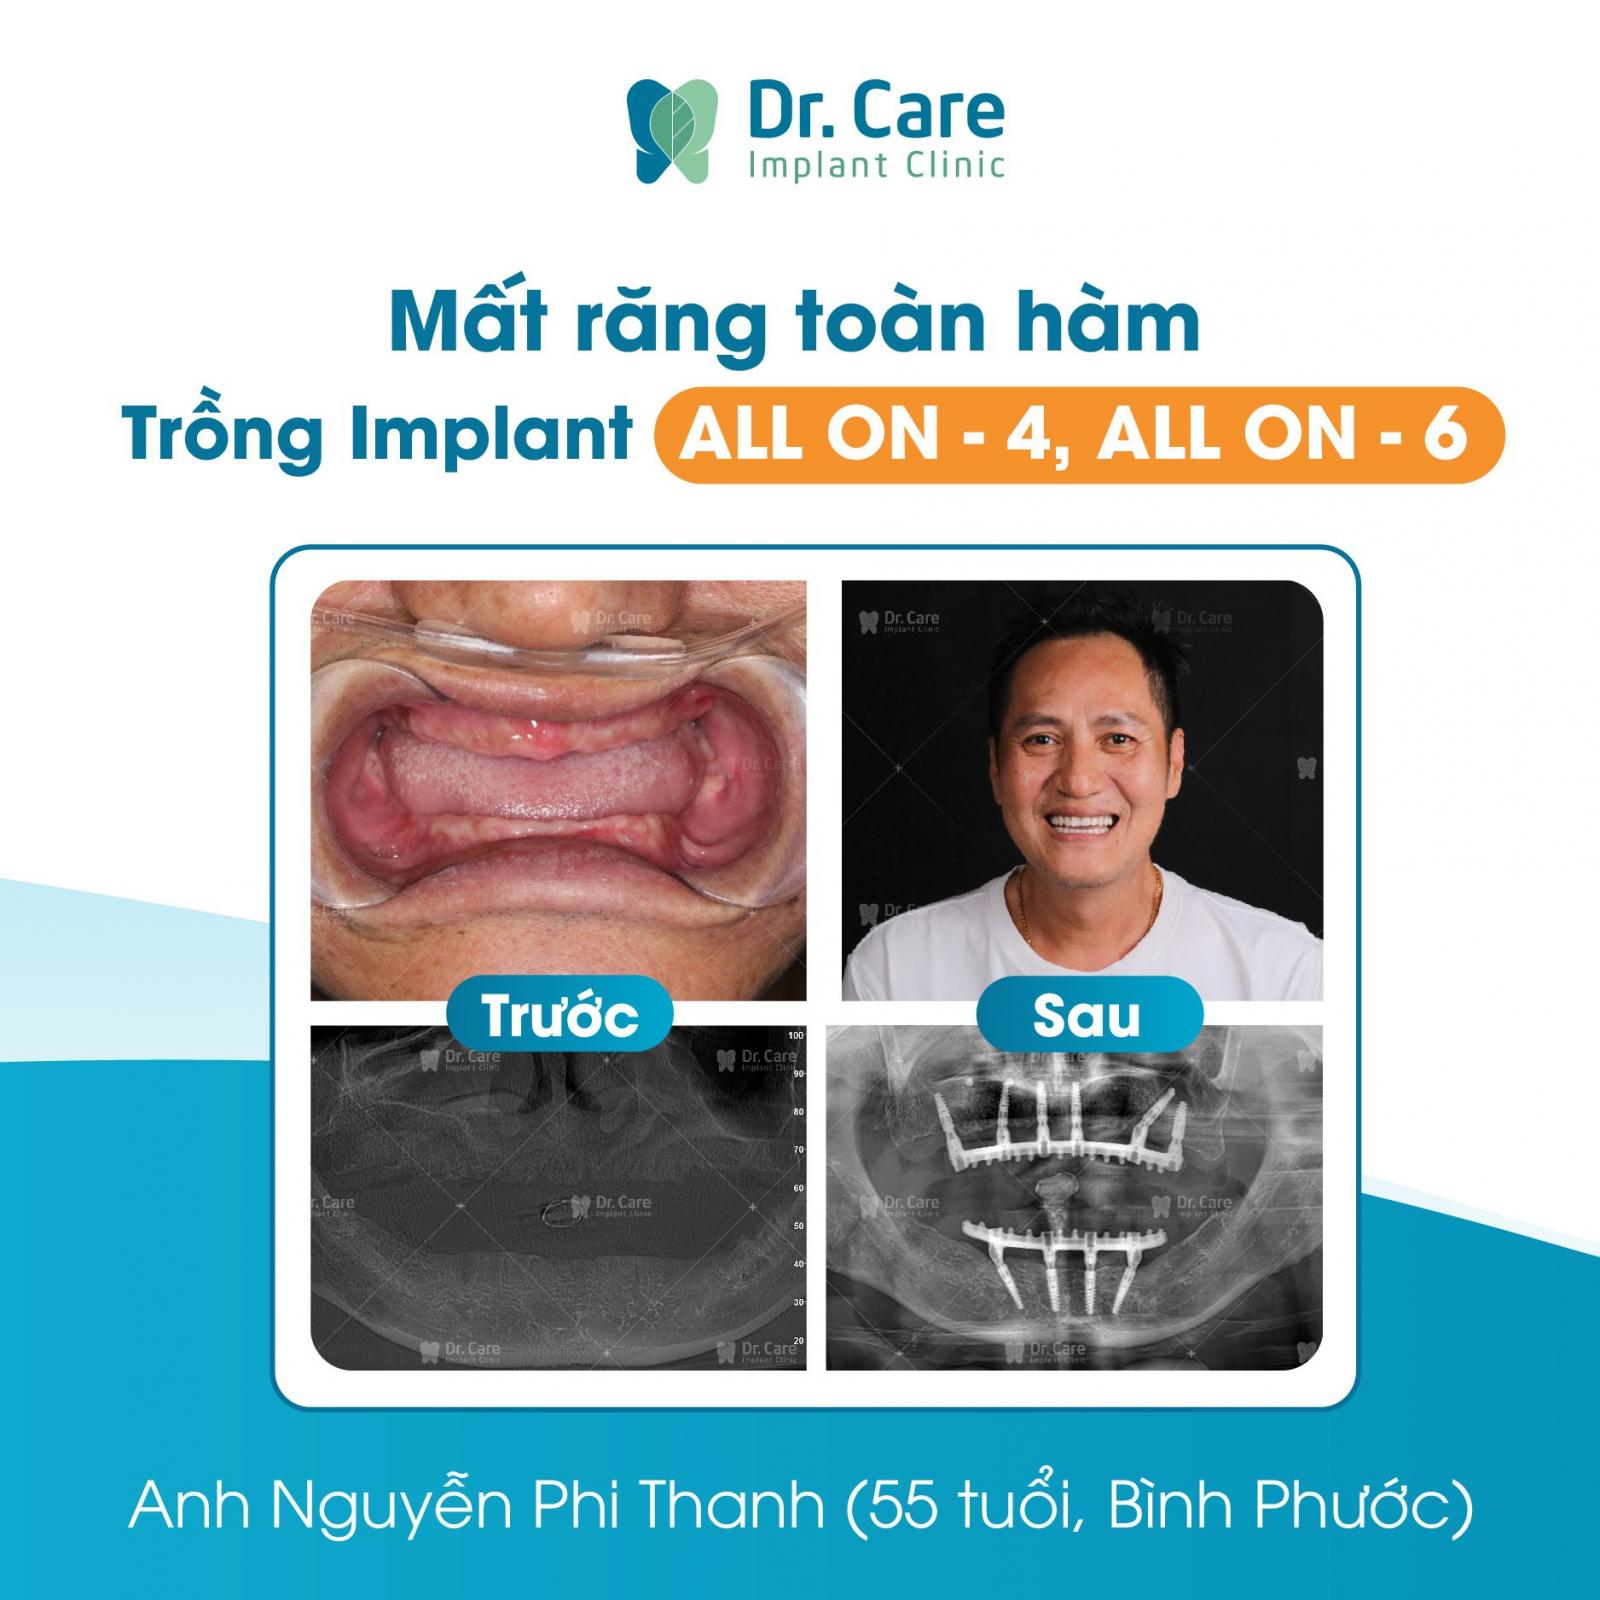 Trồng răng toàn hàm Implant All On - 6 tại Dr. Care